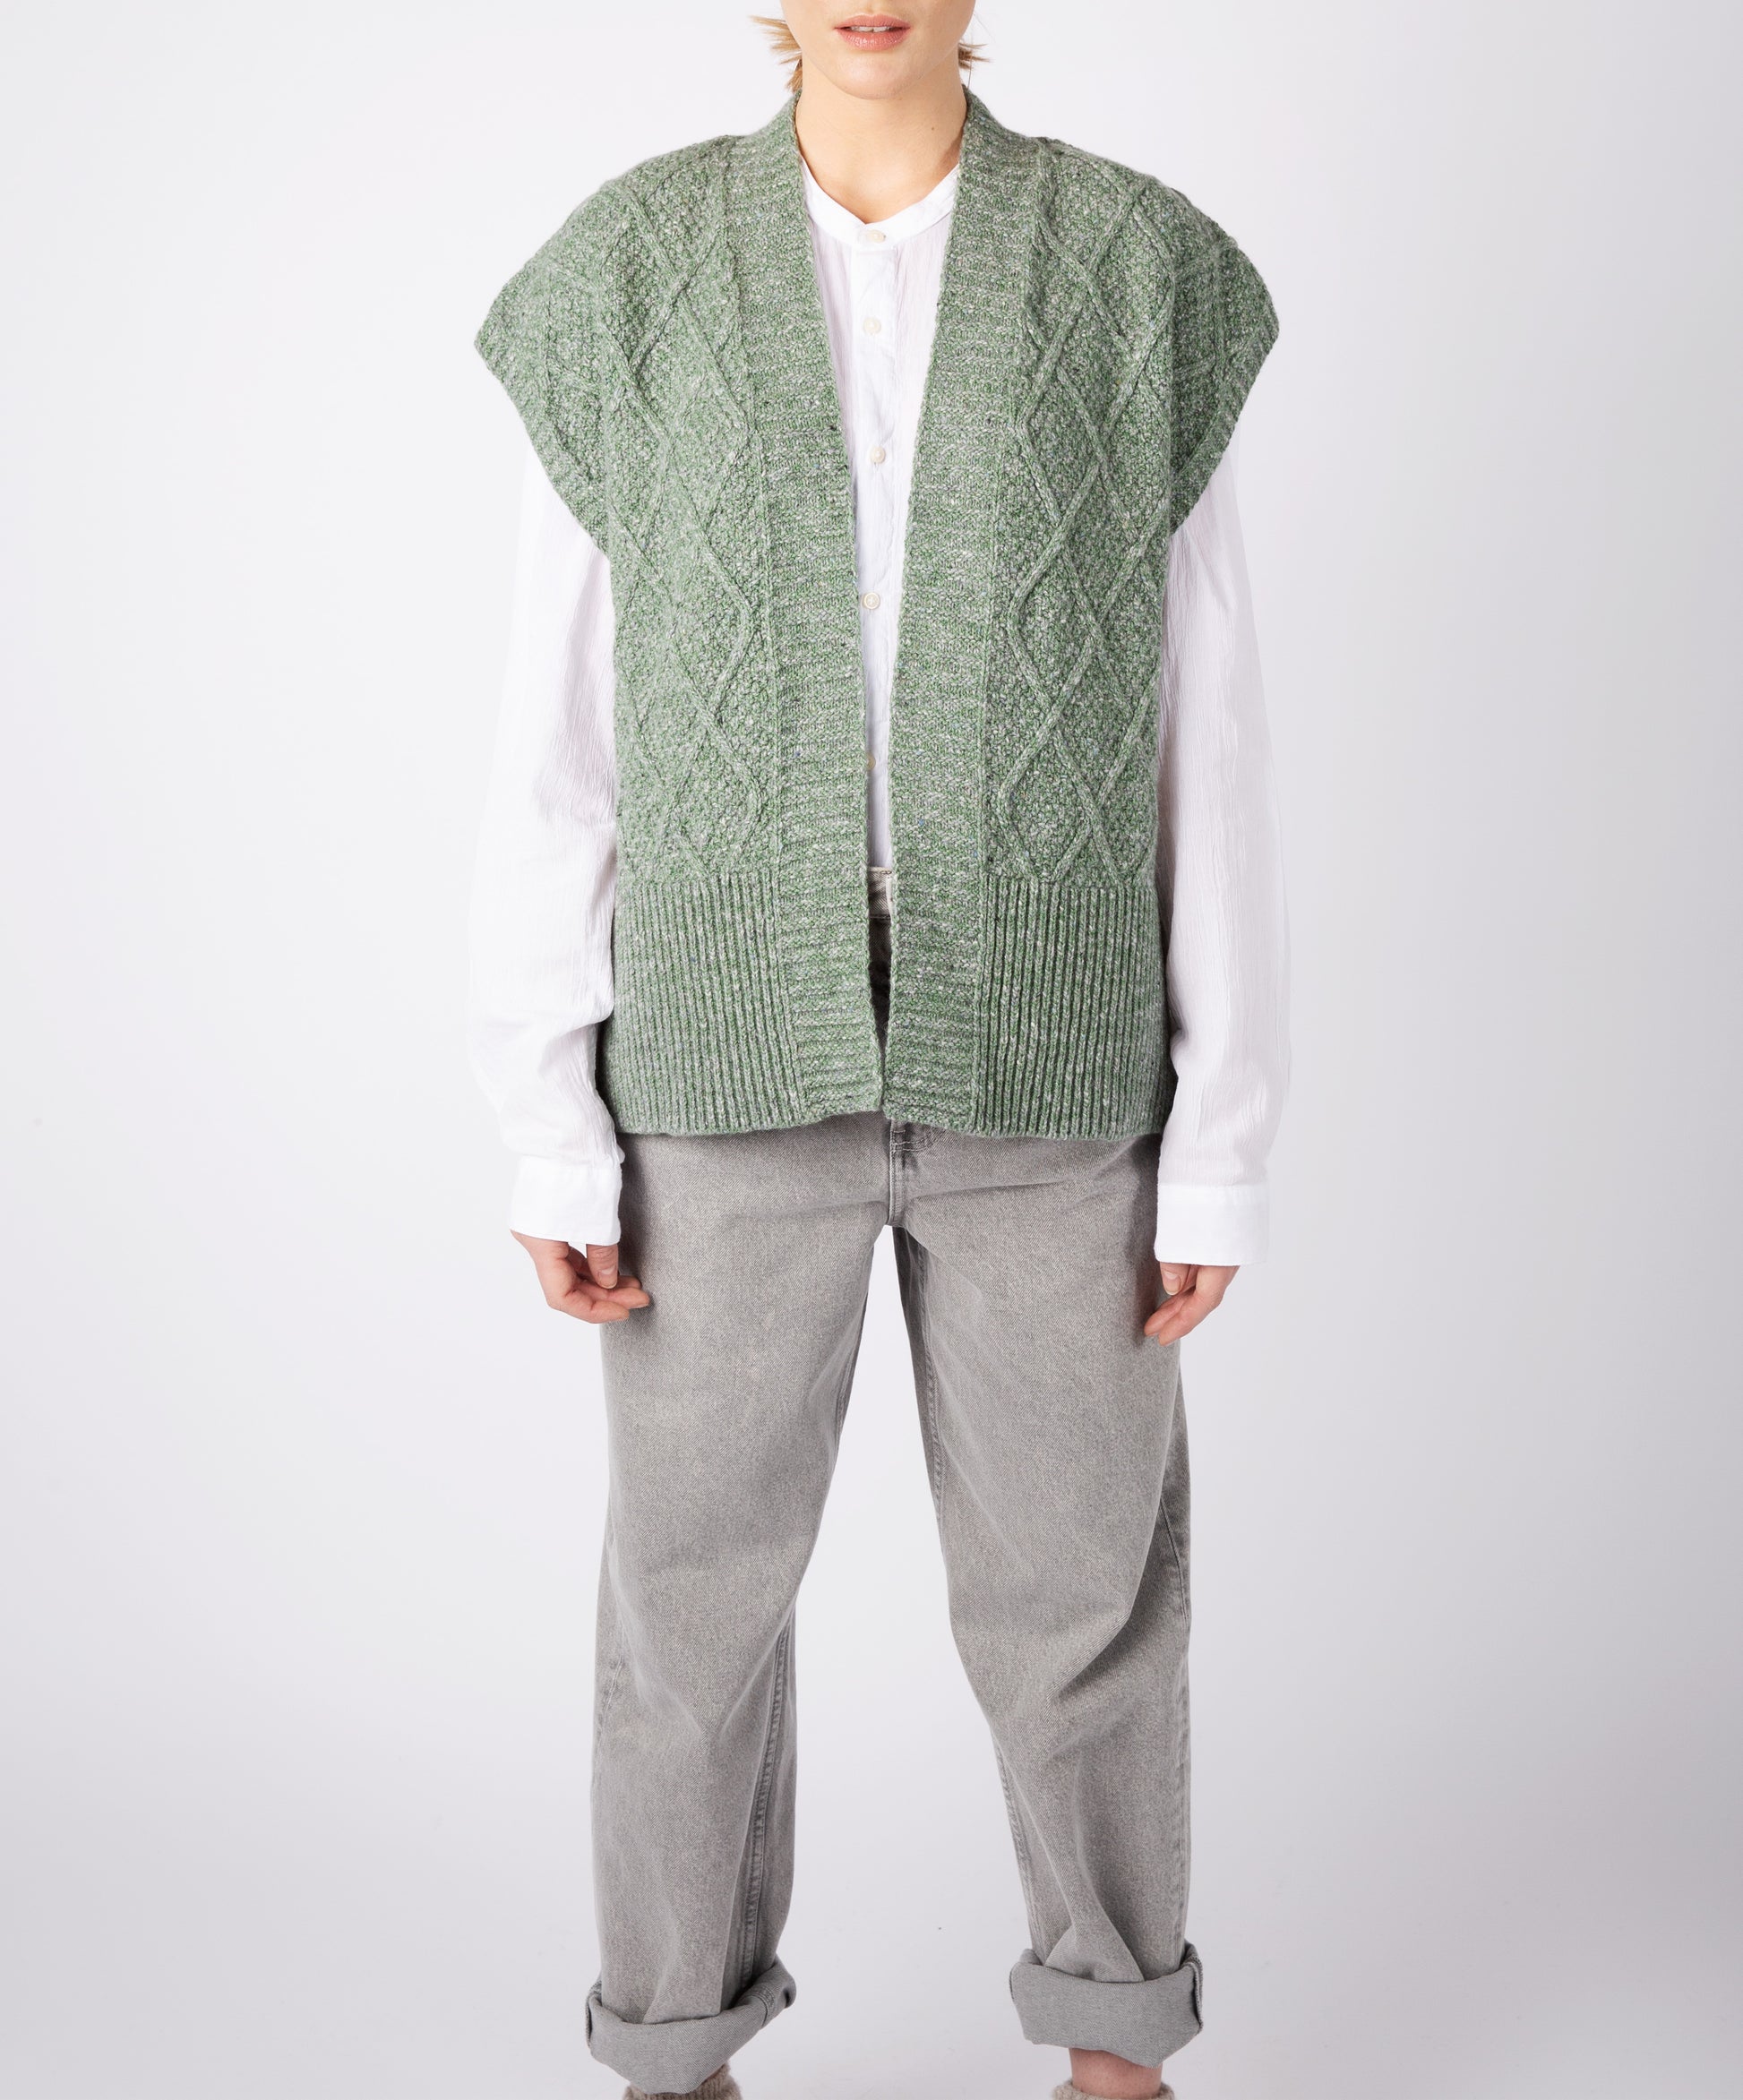 IrelandsEye Knitwear Women's Knitted 'Nettle' Diamond Pattern Vest Apple